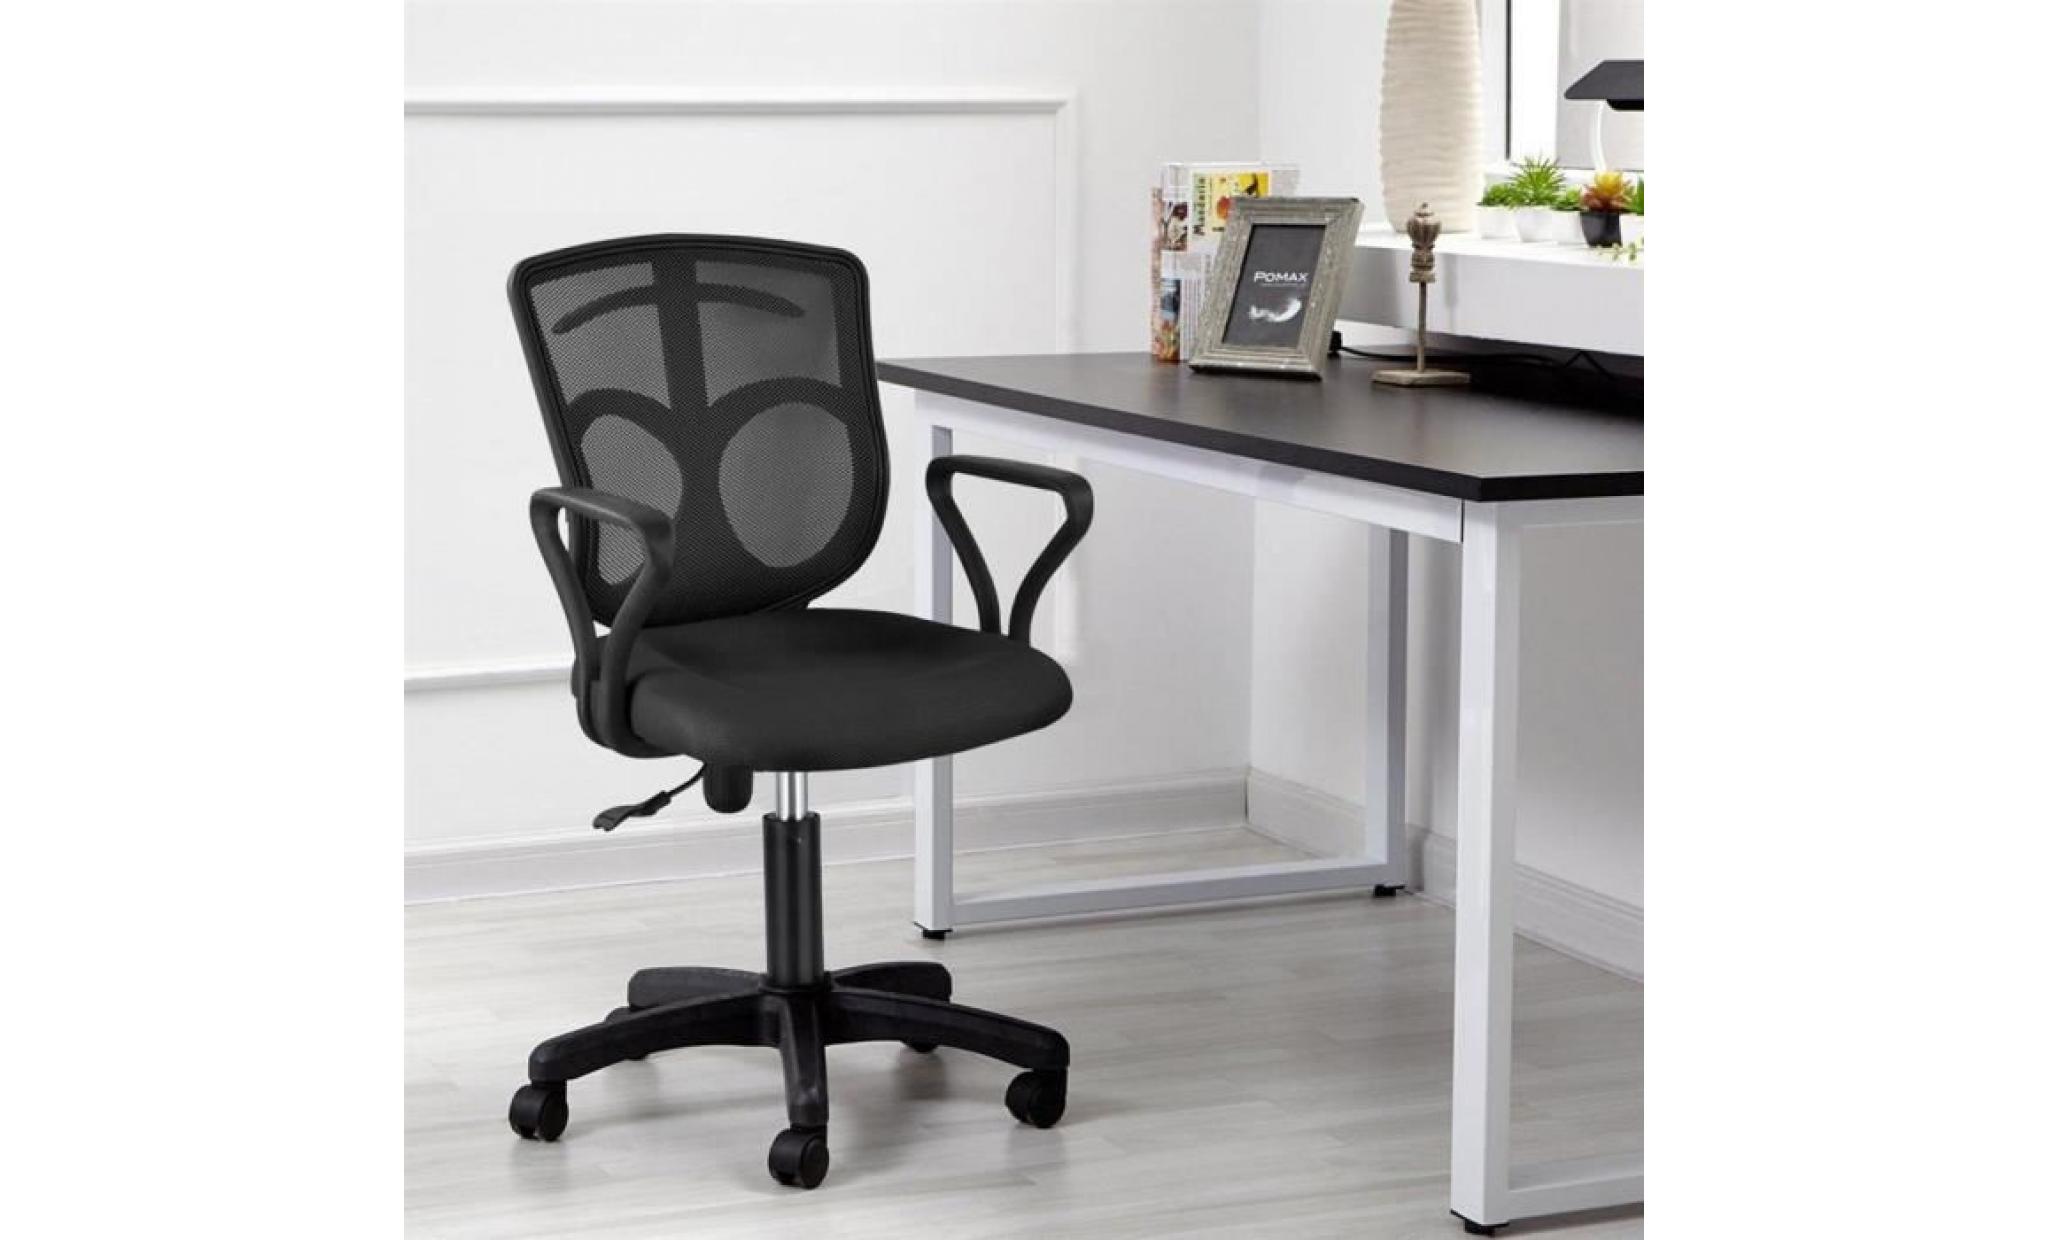 yaheetech chaise fauteuil de bureau pivotant hauteur réglable avec crochet pour vêtement sac accoudoirs chaise inclinable dossier